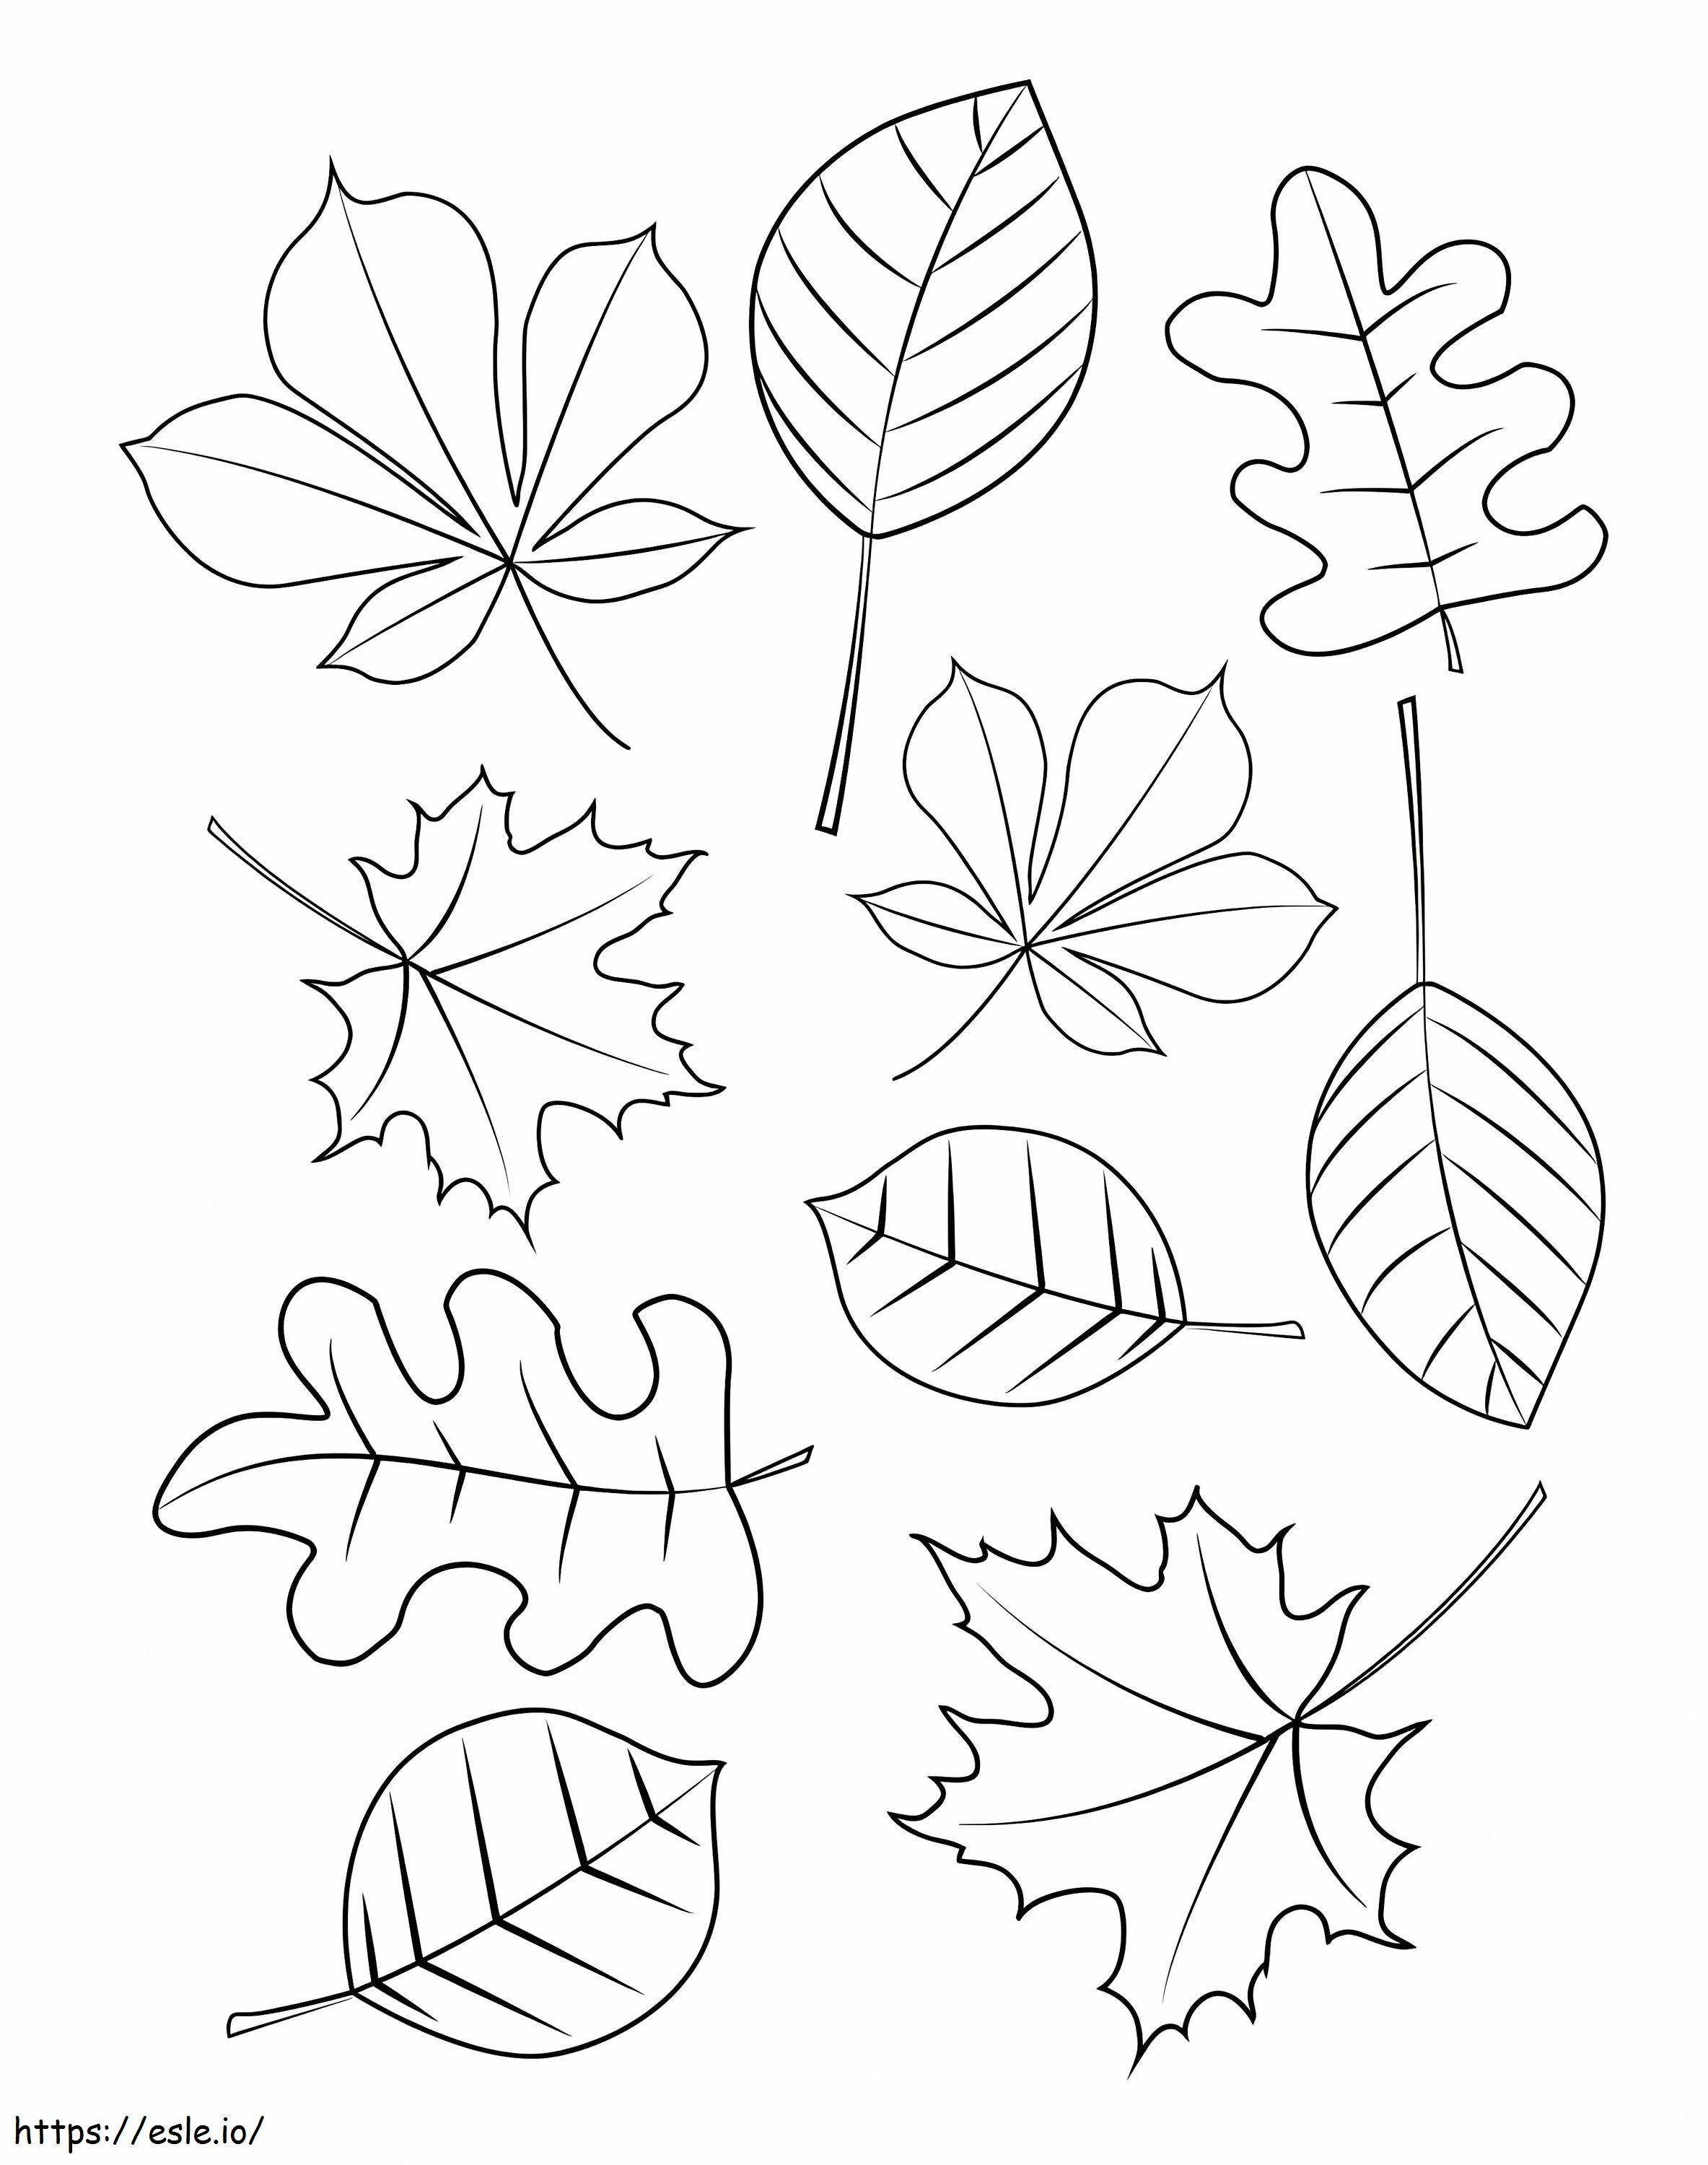 Herbstblätter 8 ausmalbilder